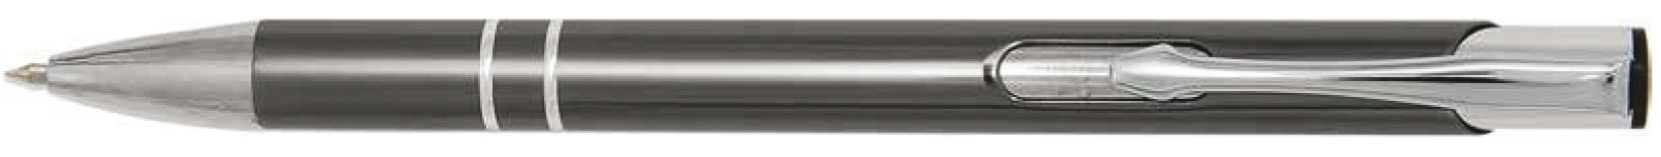 BestPen - penna promozionale in metallo con incisione C-03